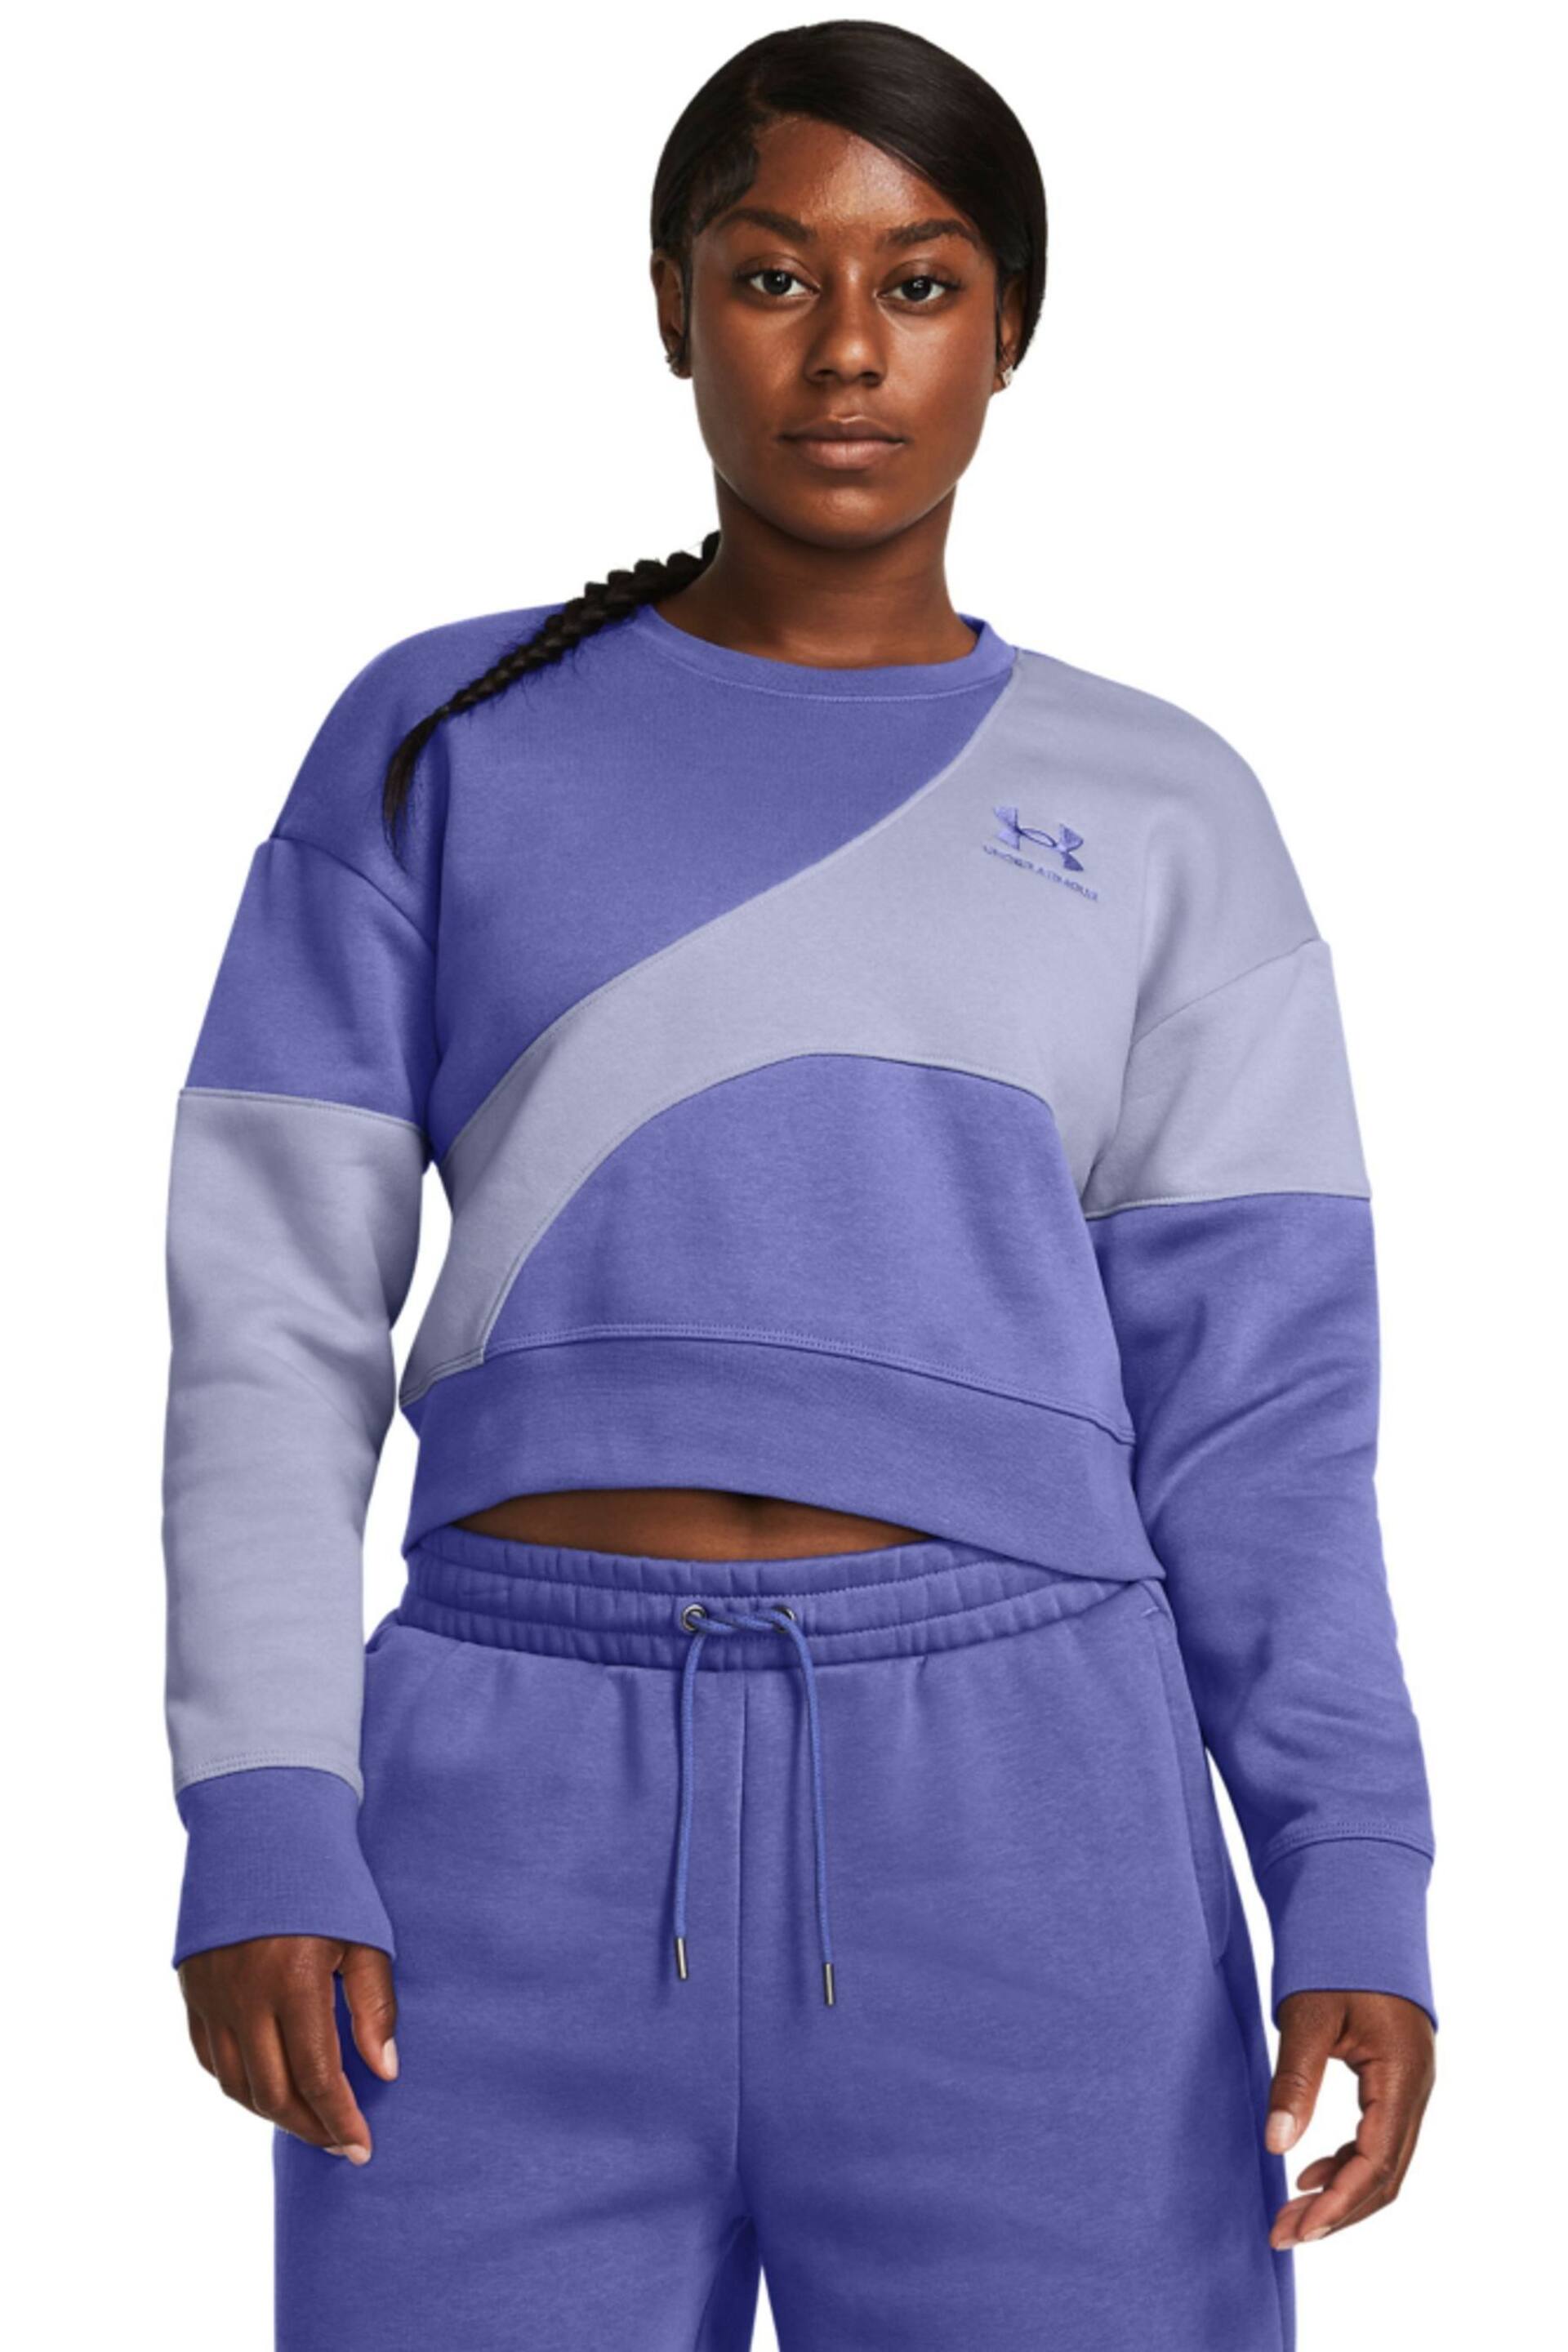 Under Armour Blue Essential Fleece Crop Crew Sweatshirt - Image 1 of 5